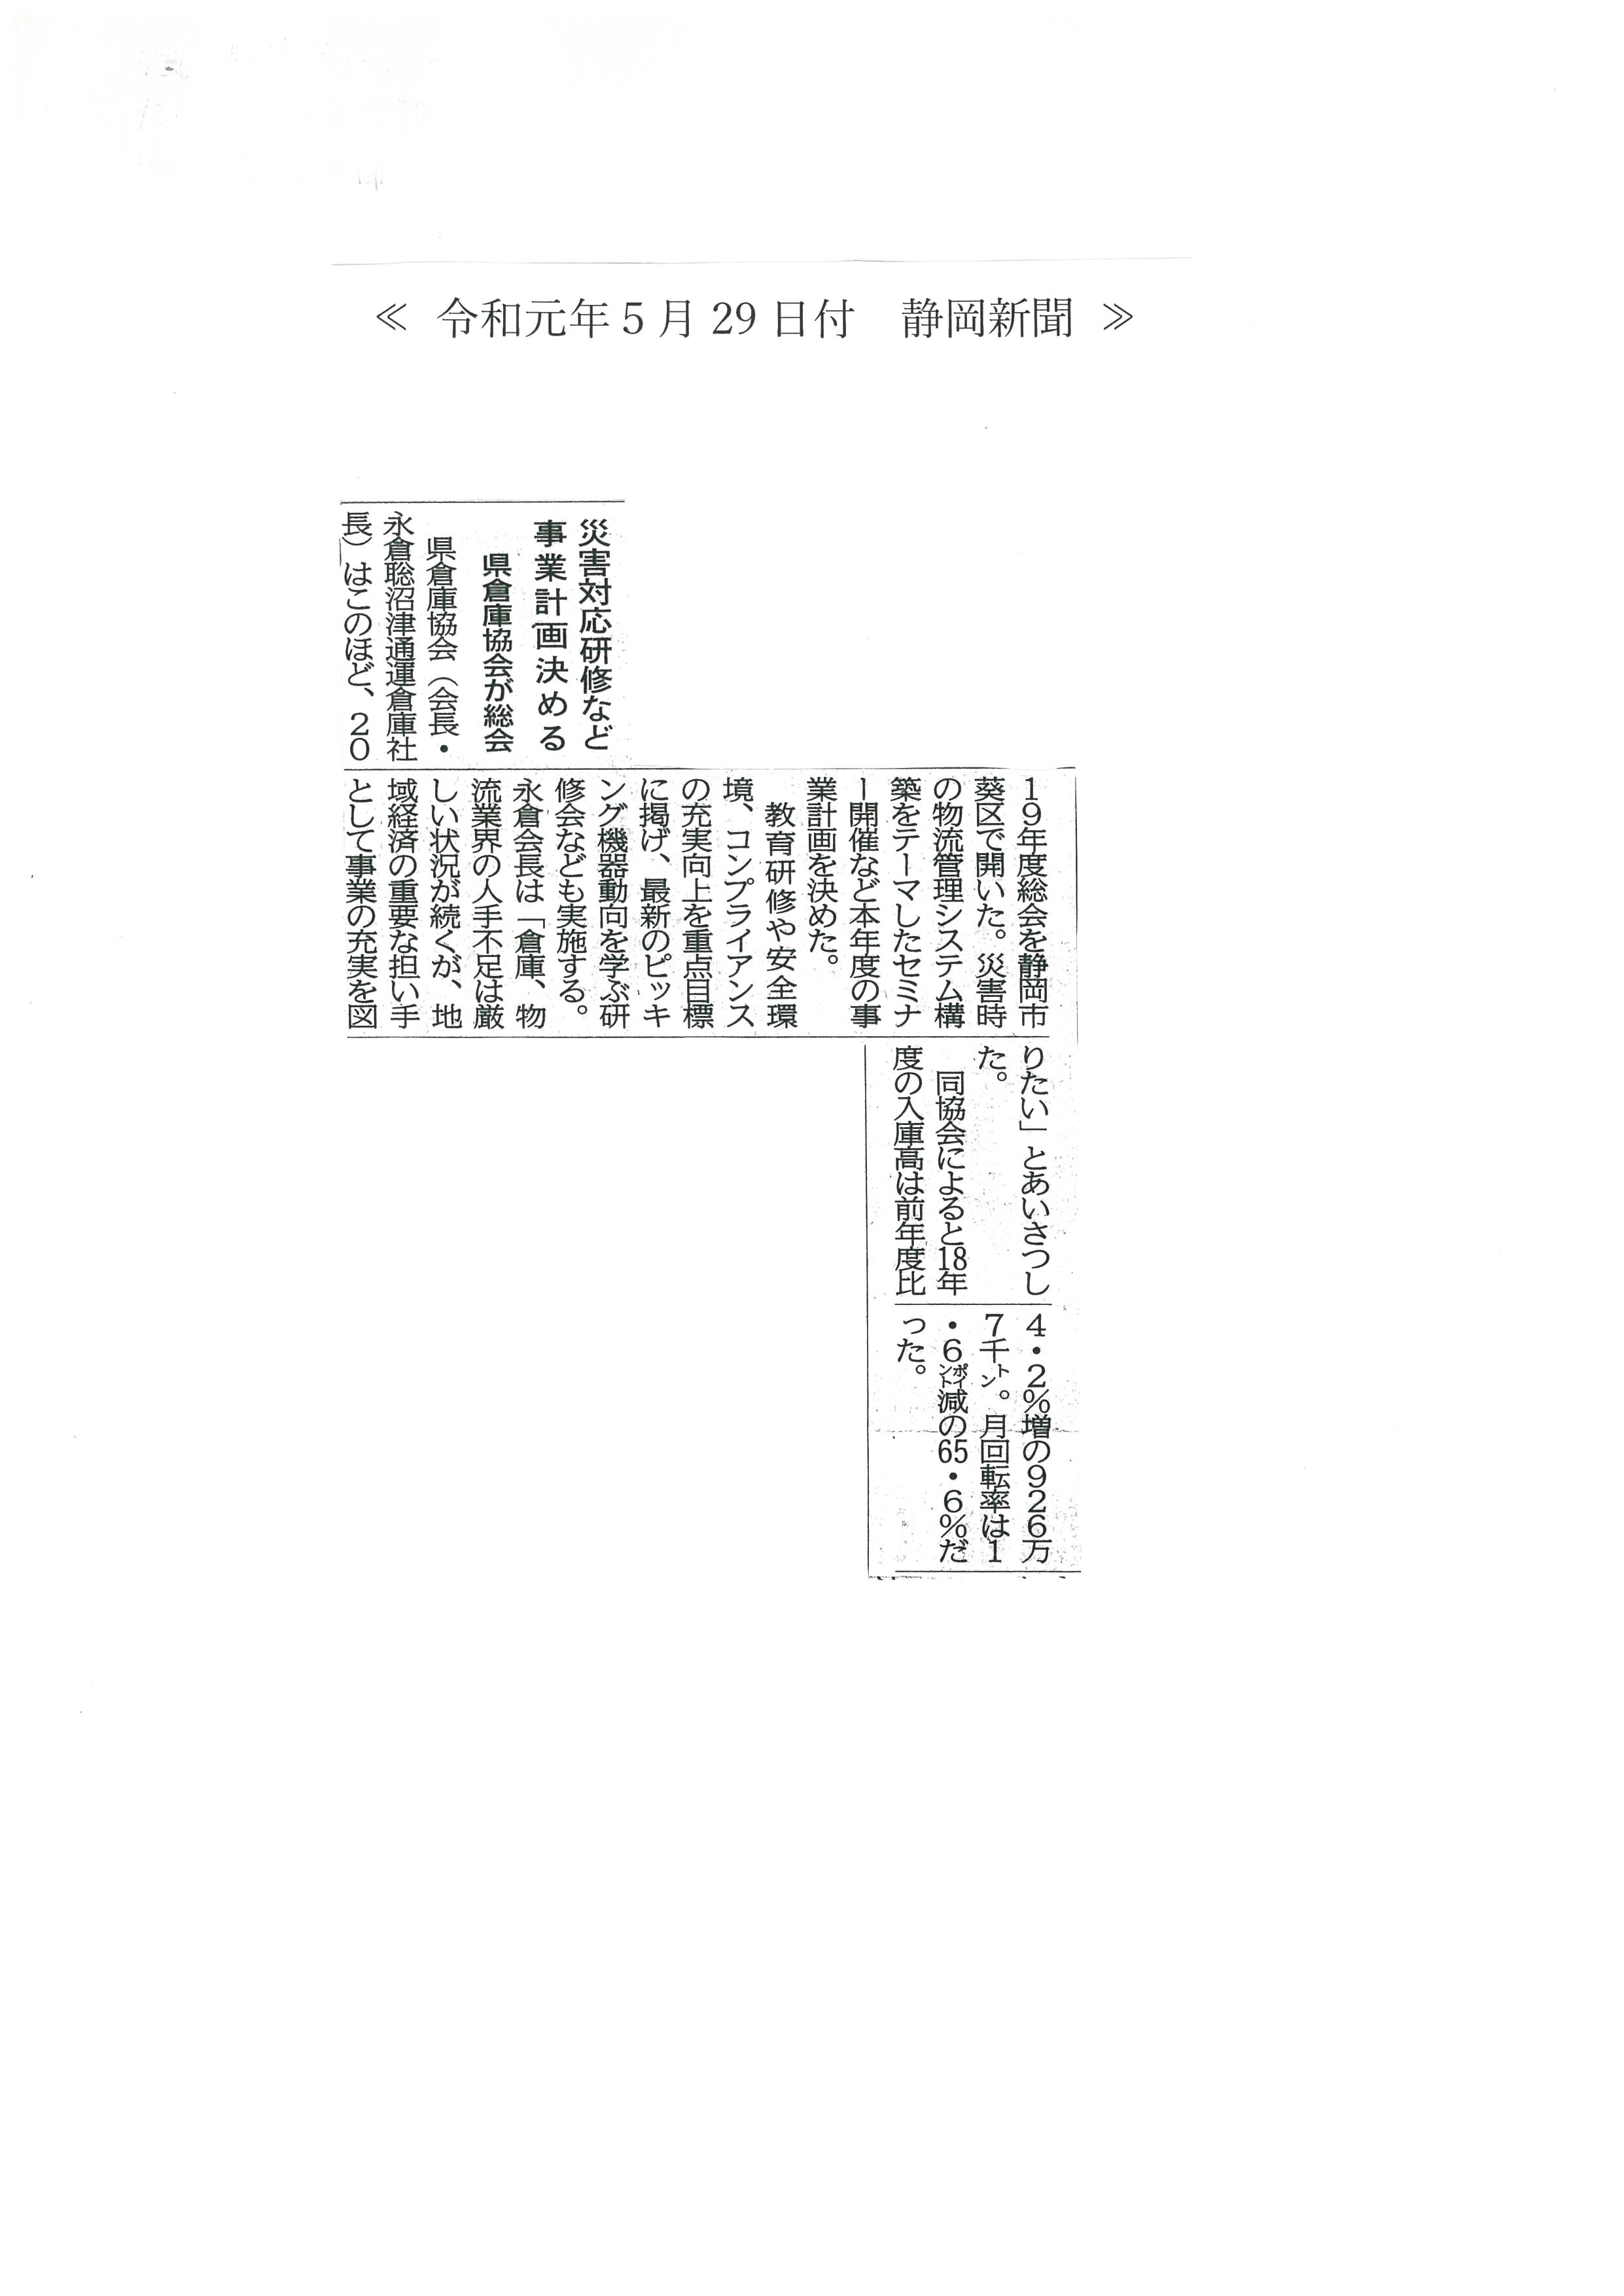 静岡新聞記事　静岡県倉庫協会第71回通常総会がホテルアソシア静岡にて開催